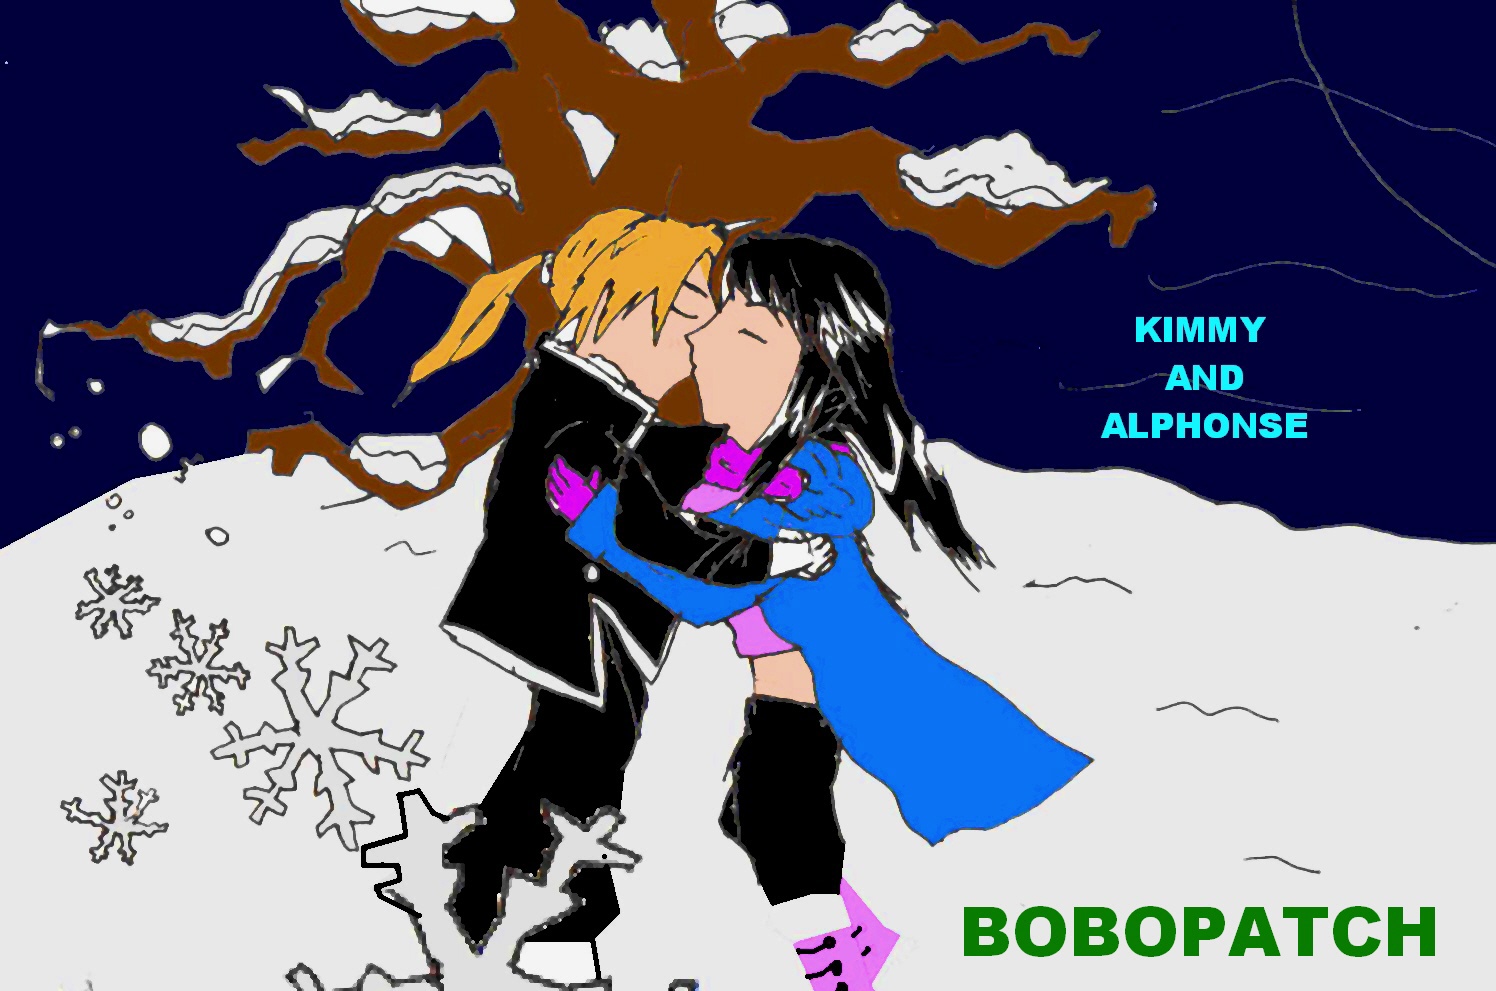 Winter Romance by Bobopatch